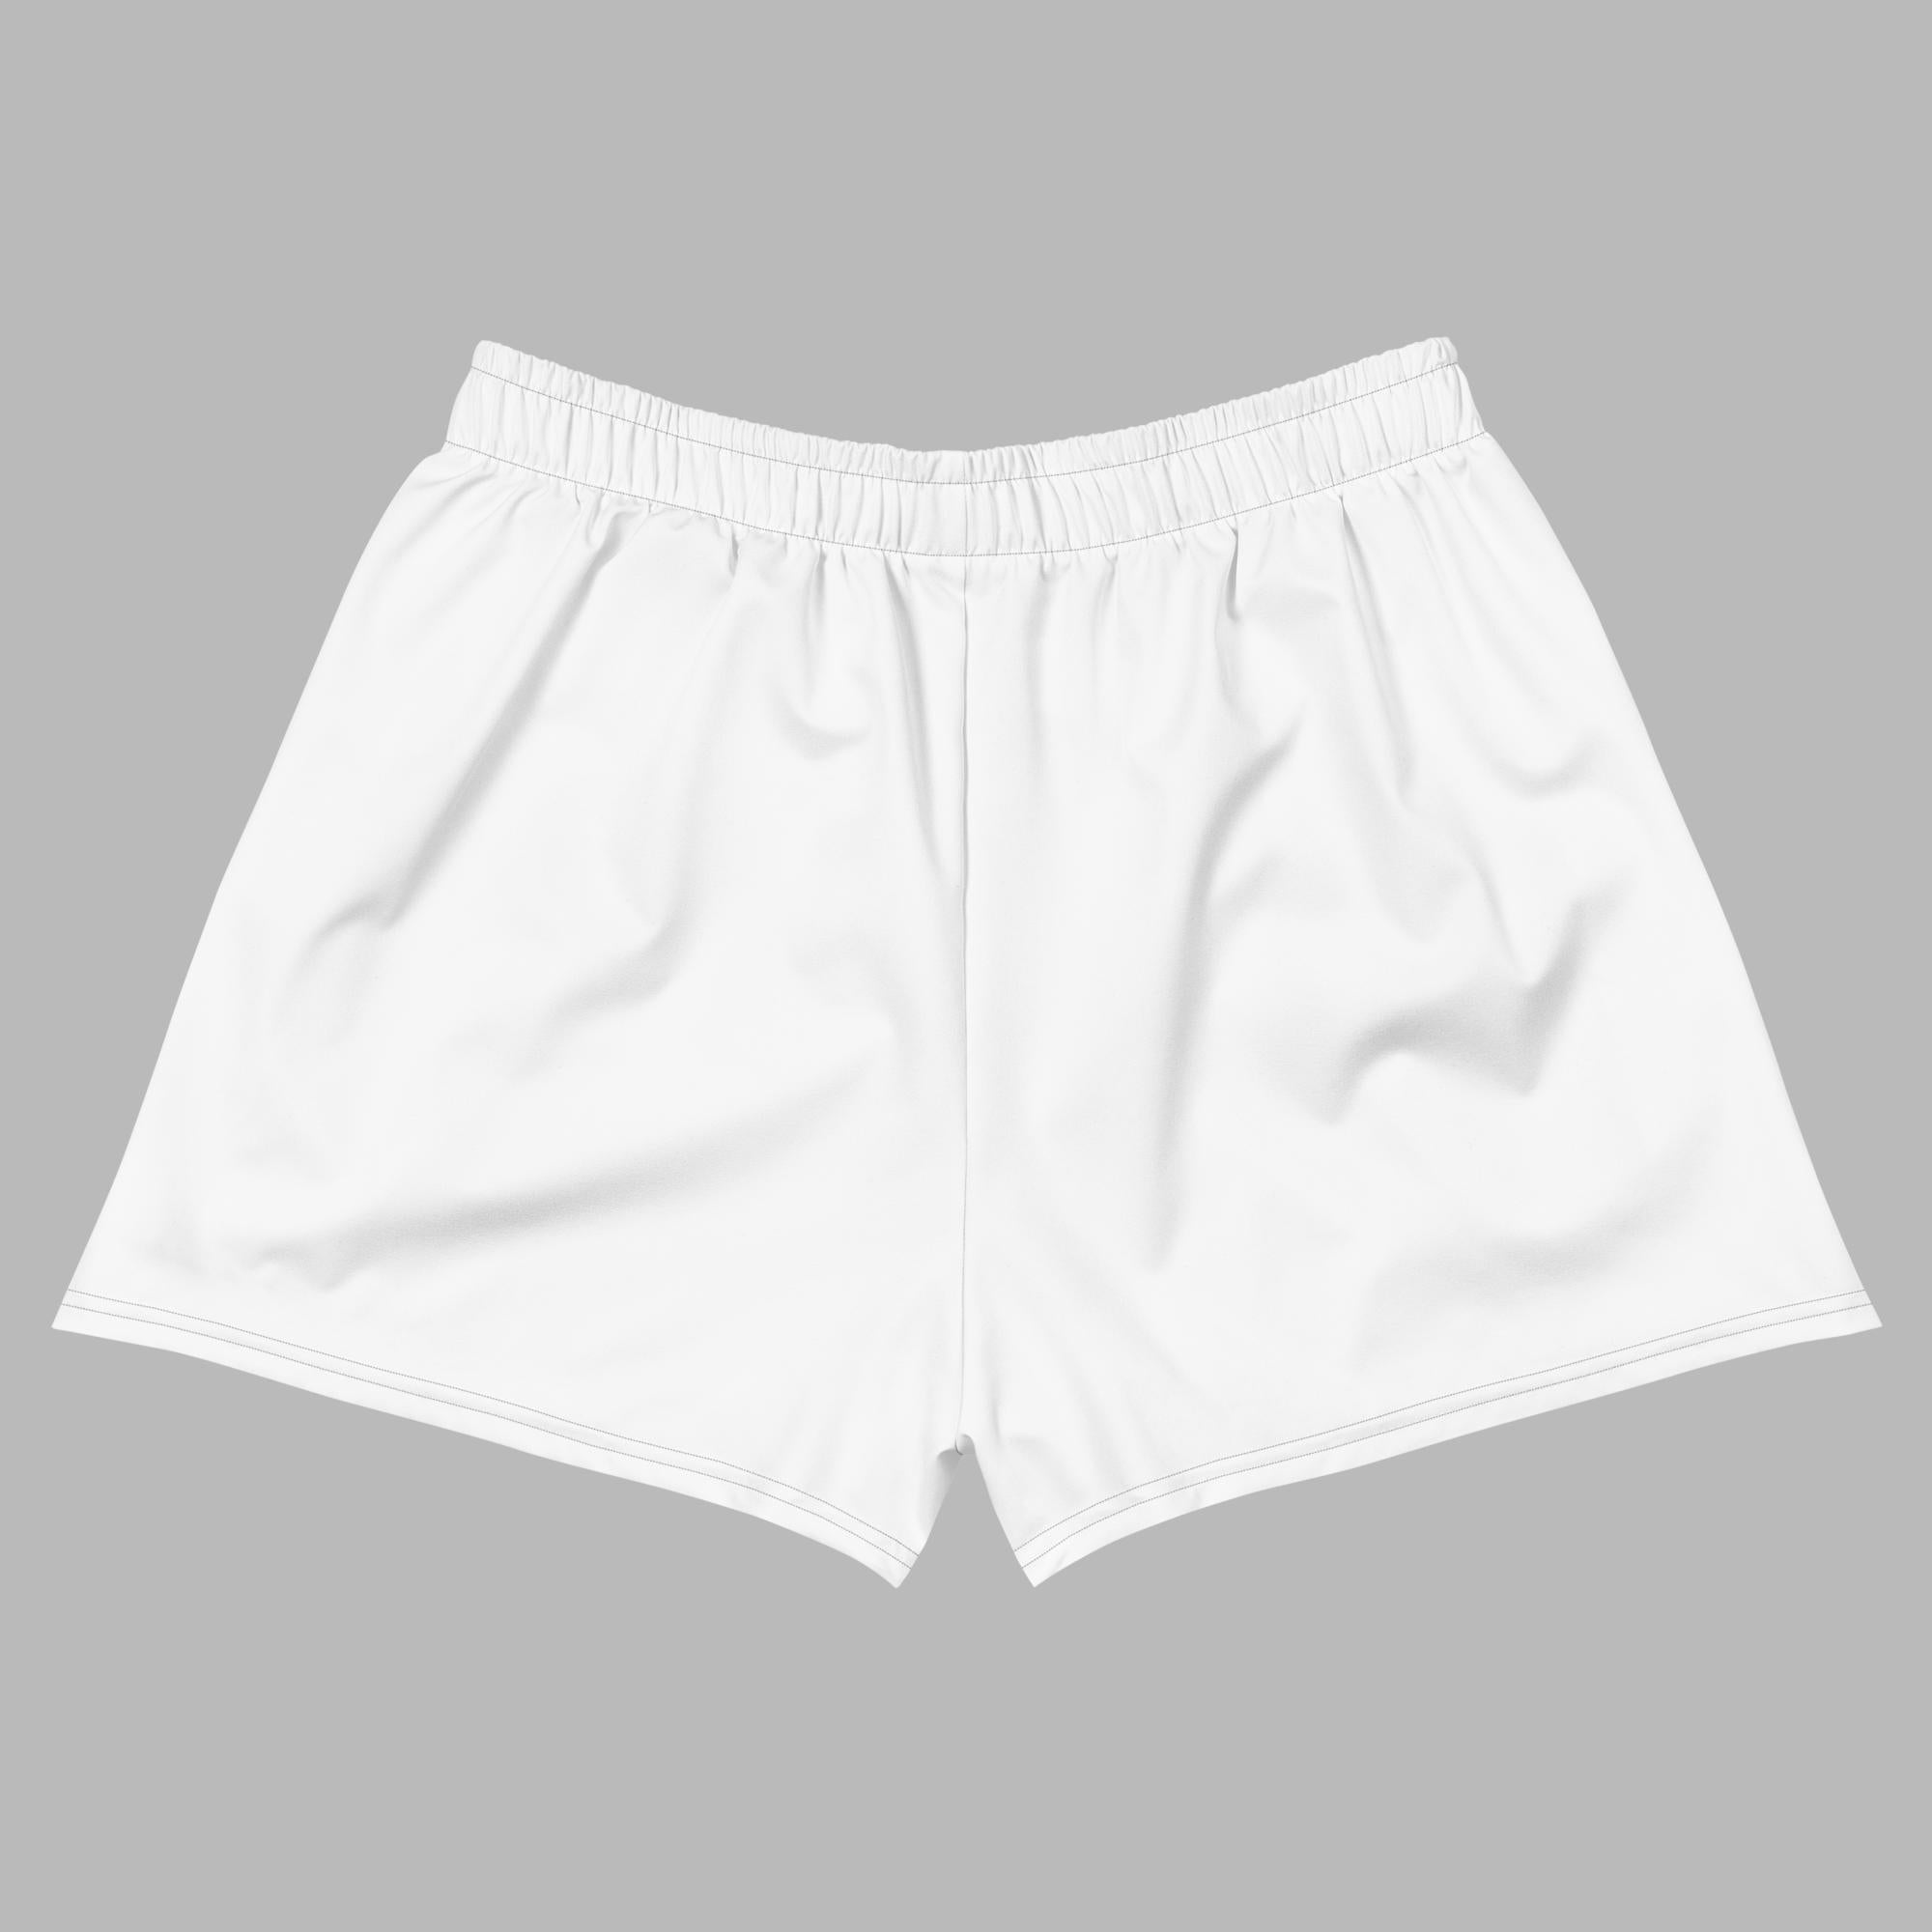 Women's Athletic Short Shorts - White - Sunset Harbor Clothing